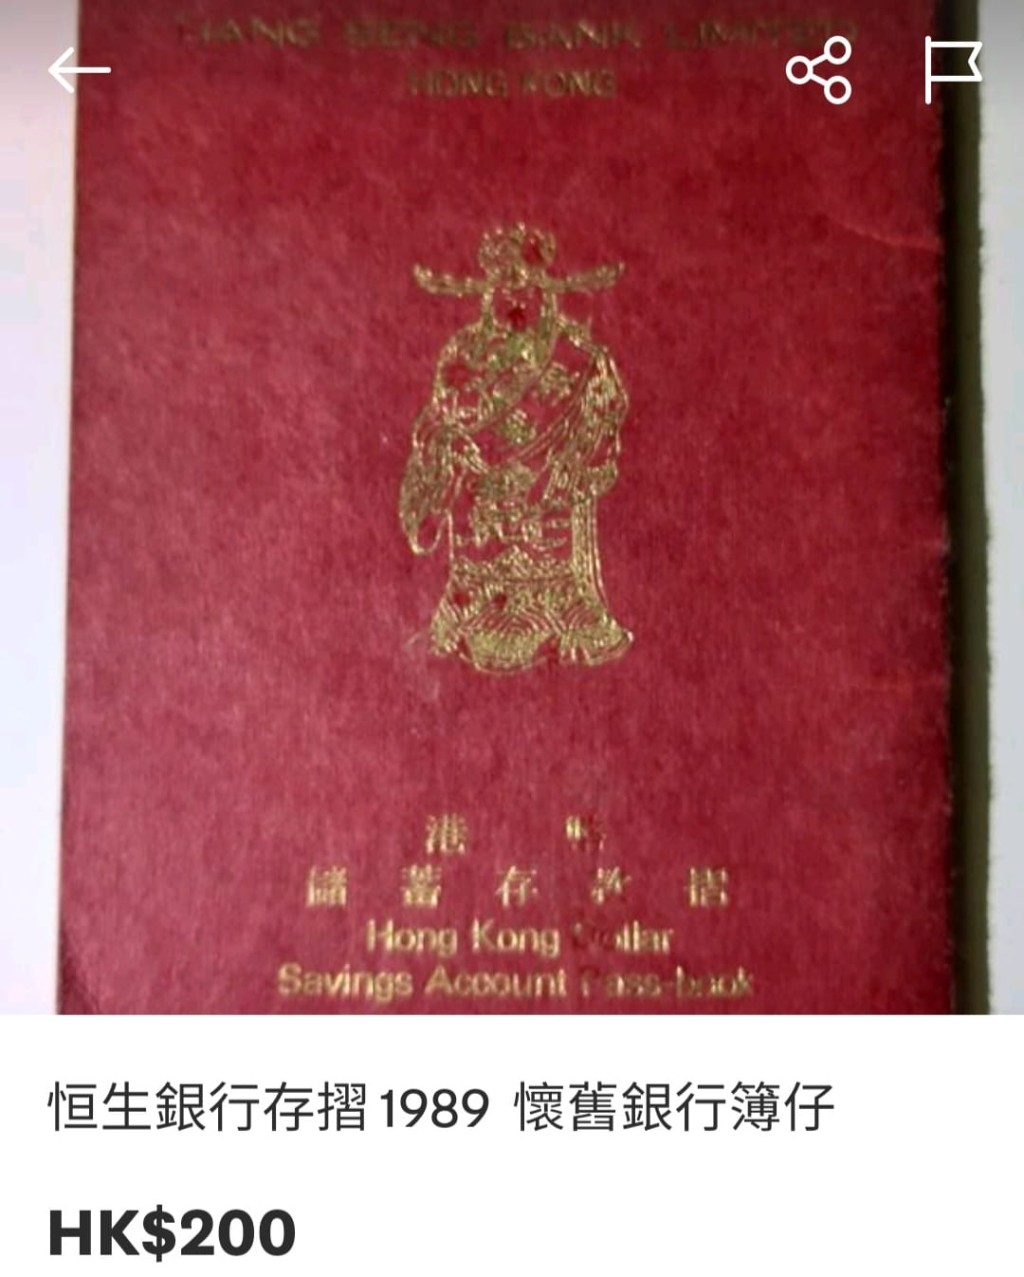 恒生的存摺，相信不少香港人旧时都有一本。